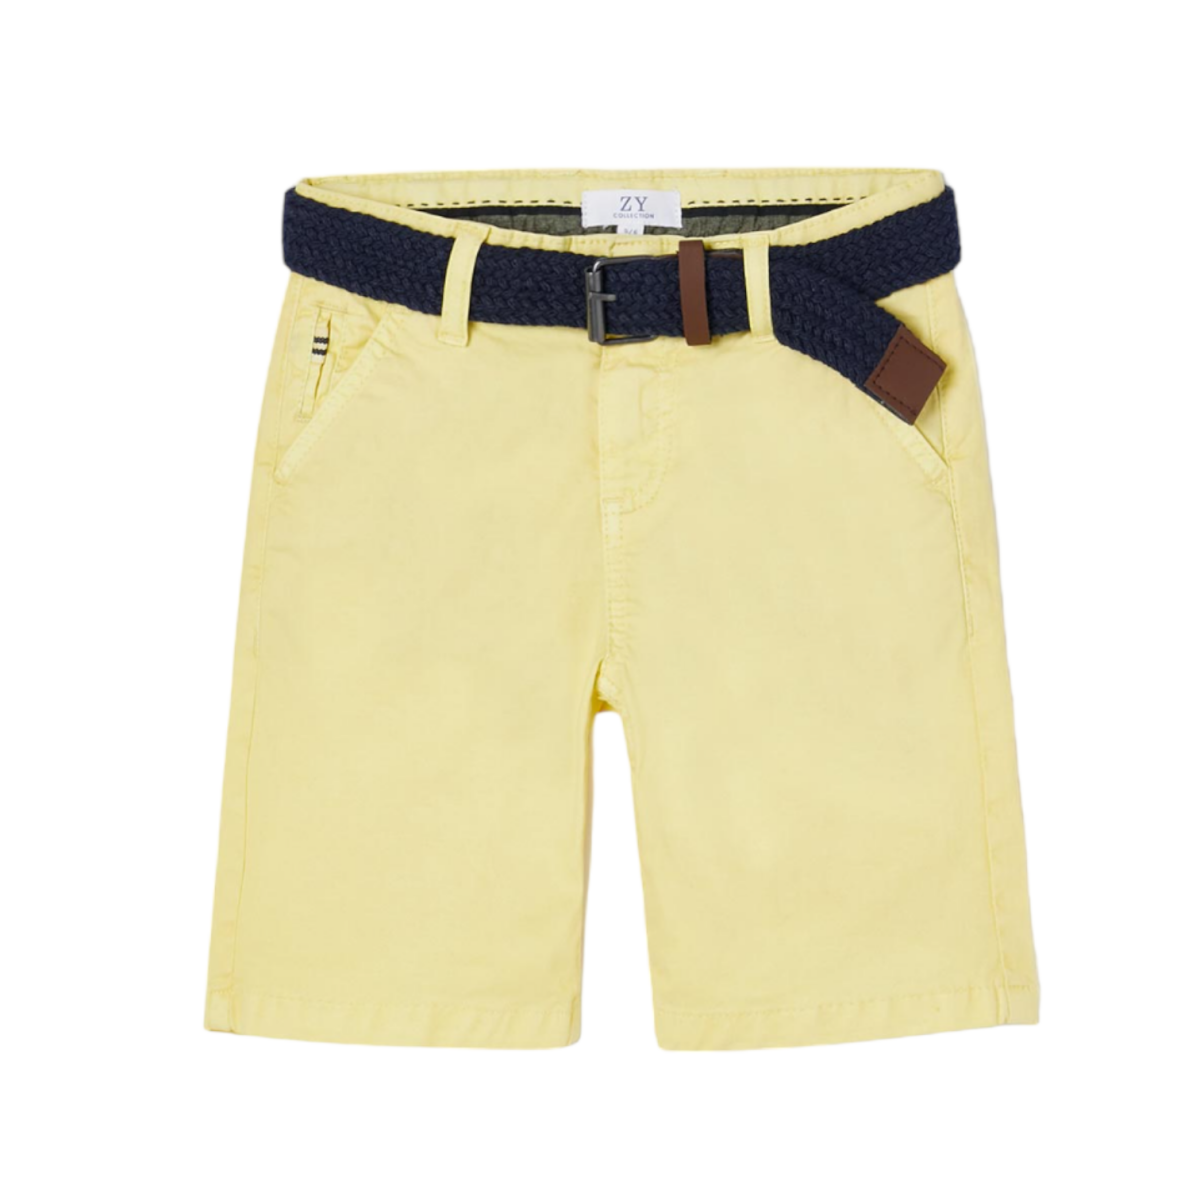 https://koalavila.com/6913-superlarge_default/pantalon-corto-para-nino-en-color-amarillo-con-cinturon-azul-marino.jpg